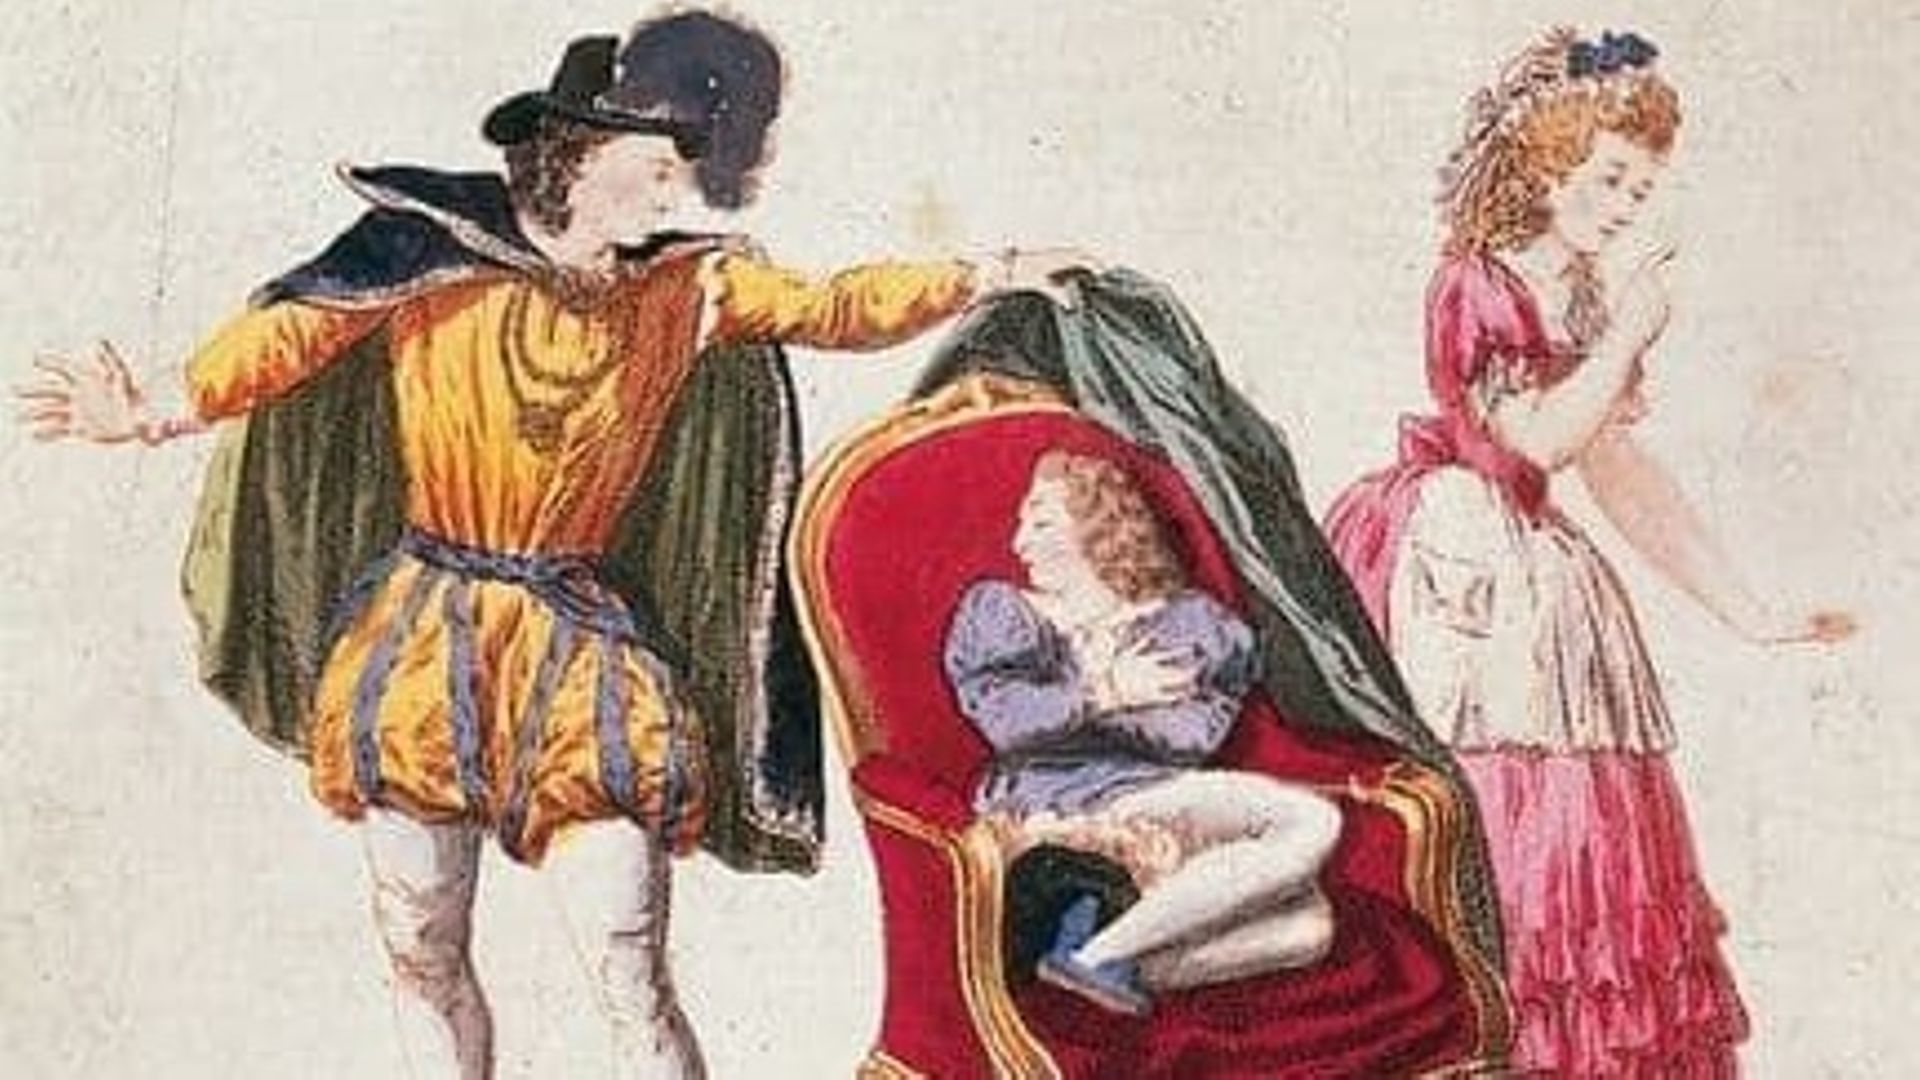 La partition de la musique de scène du Mariage de Figaro de Beaumarchais a été retrouvée